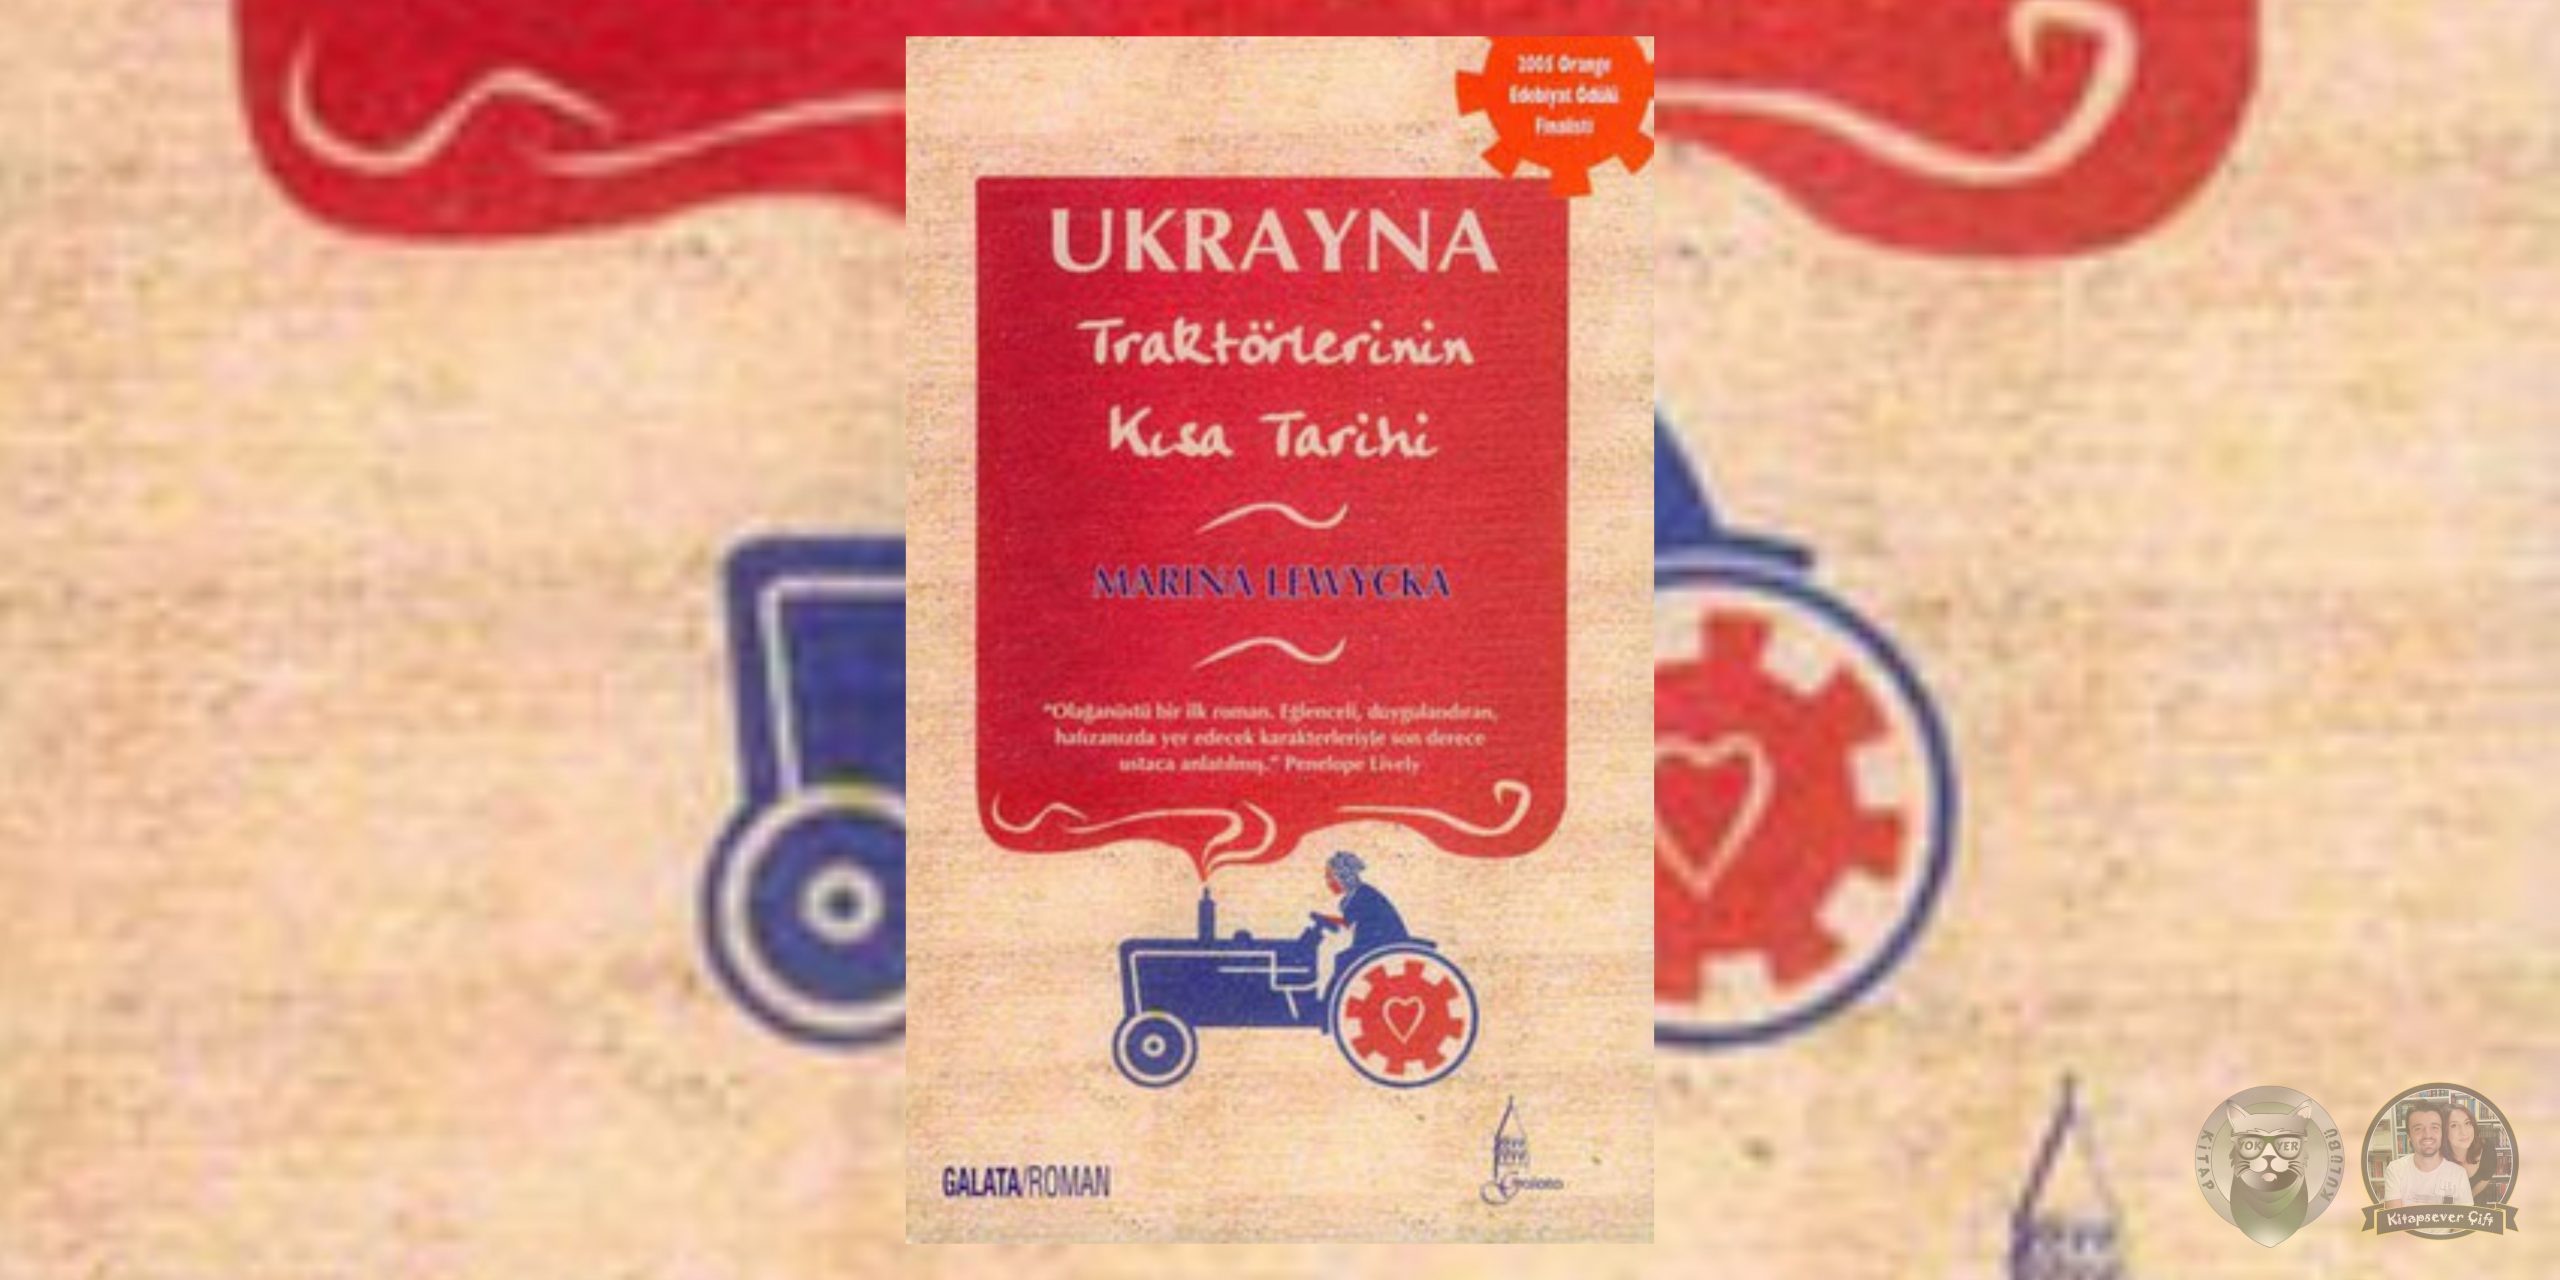 ukrayna traktörlerinin kısa tarihi